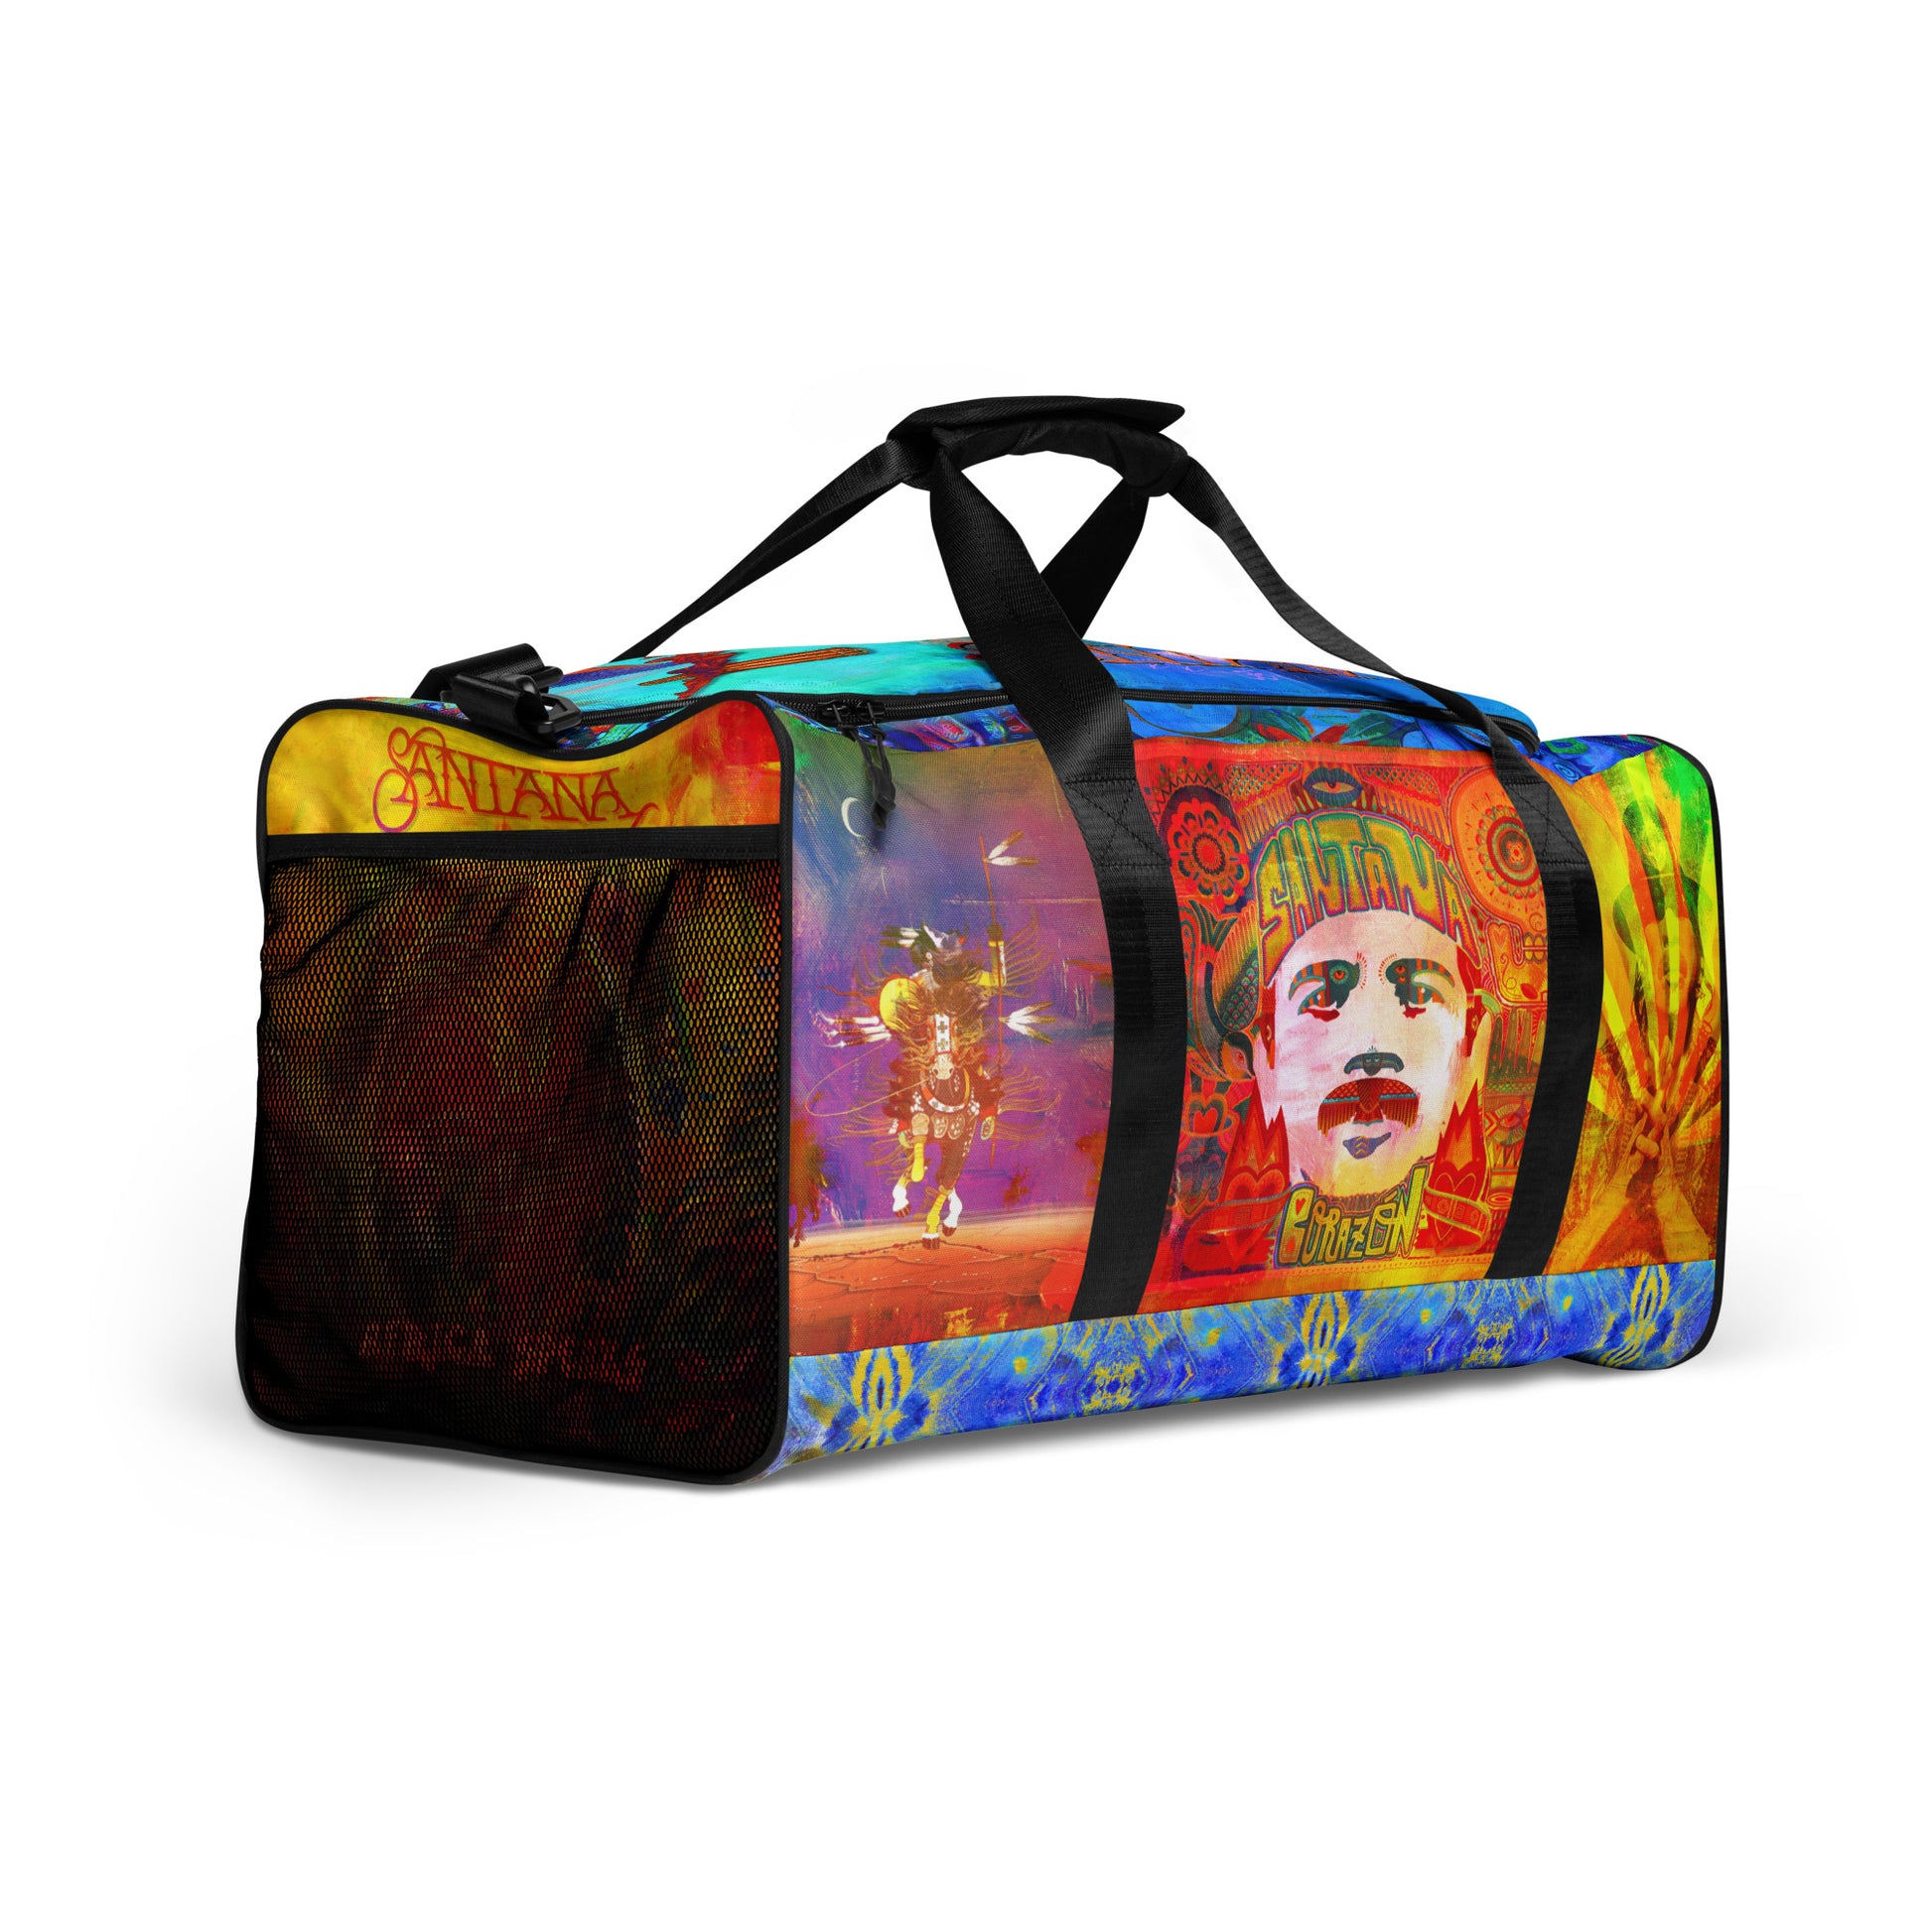 Santana Album Mash Up All-Over Duffle Bag (Print on Demand)